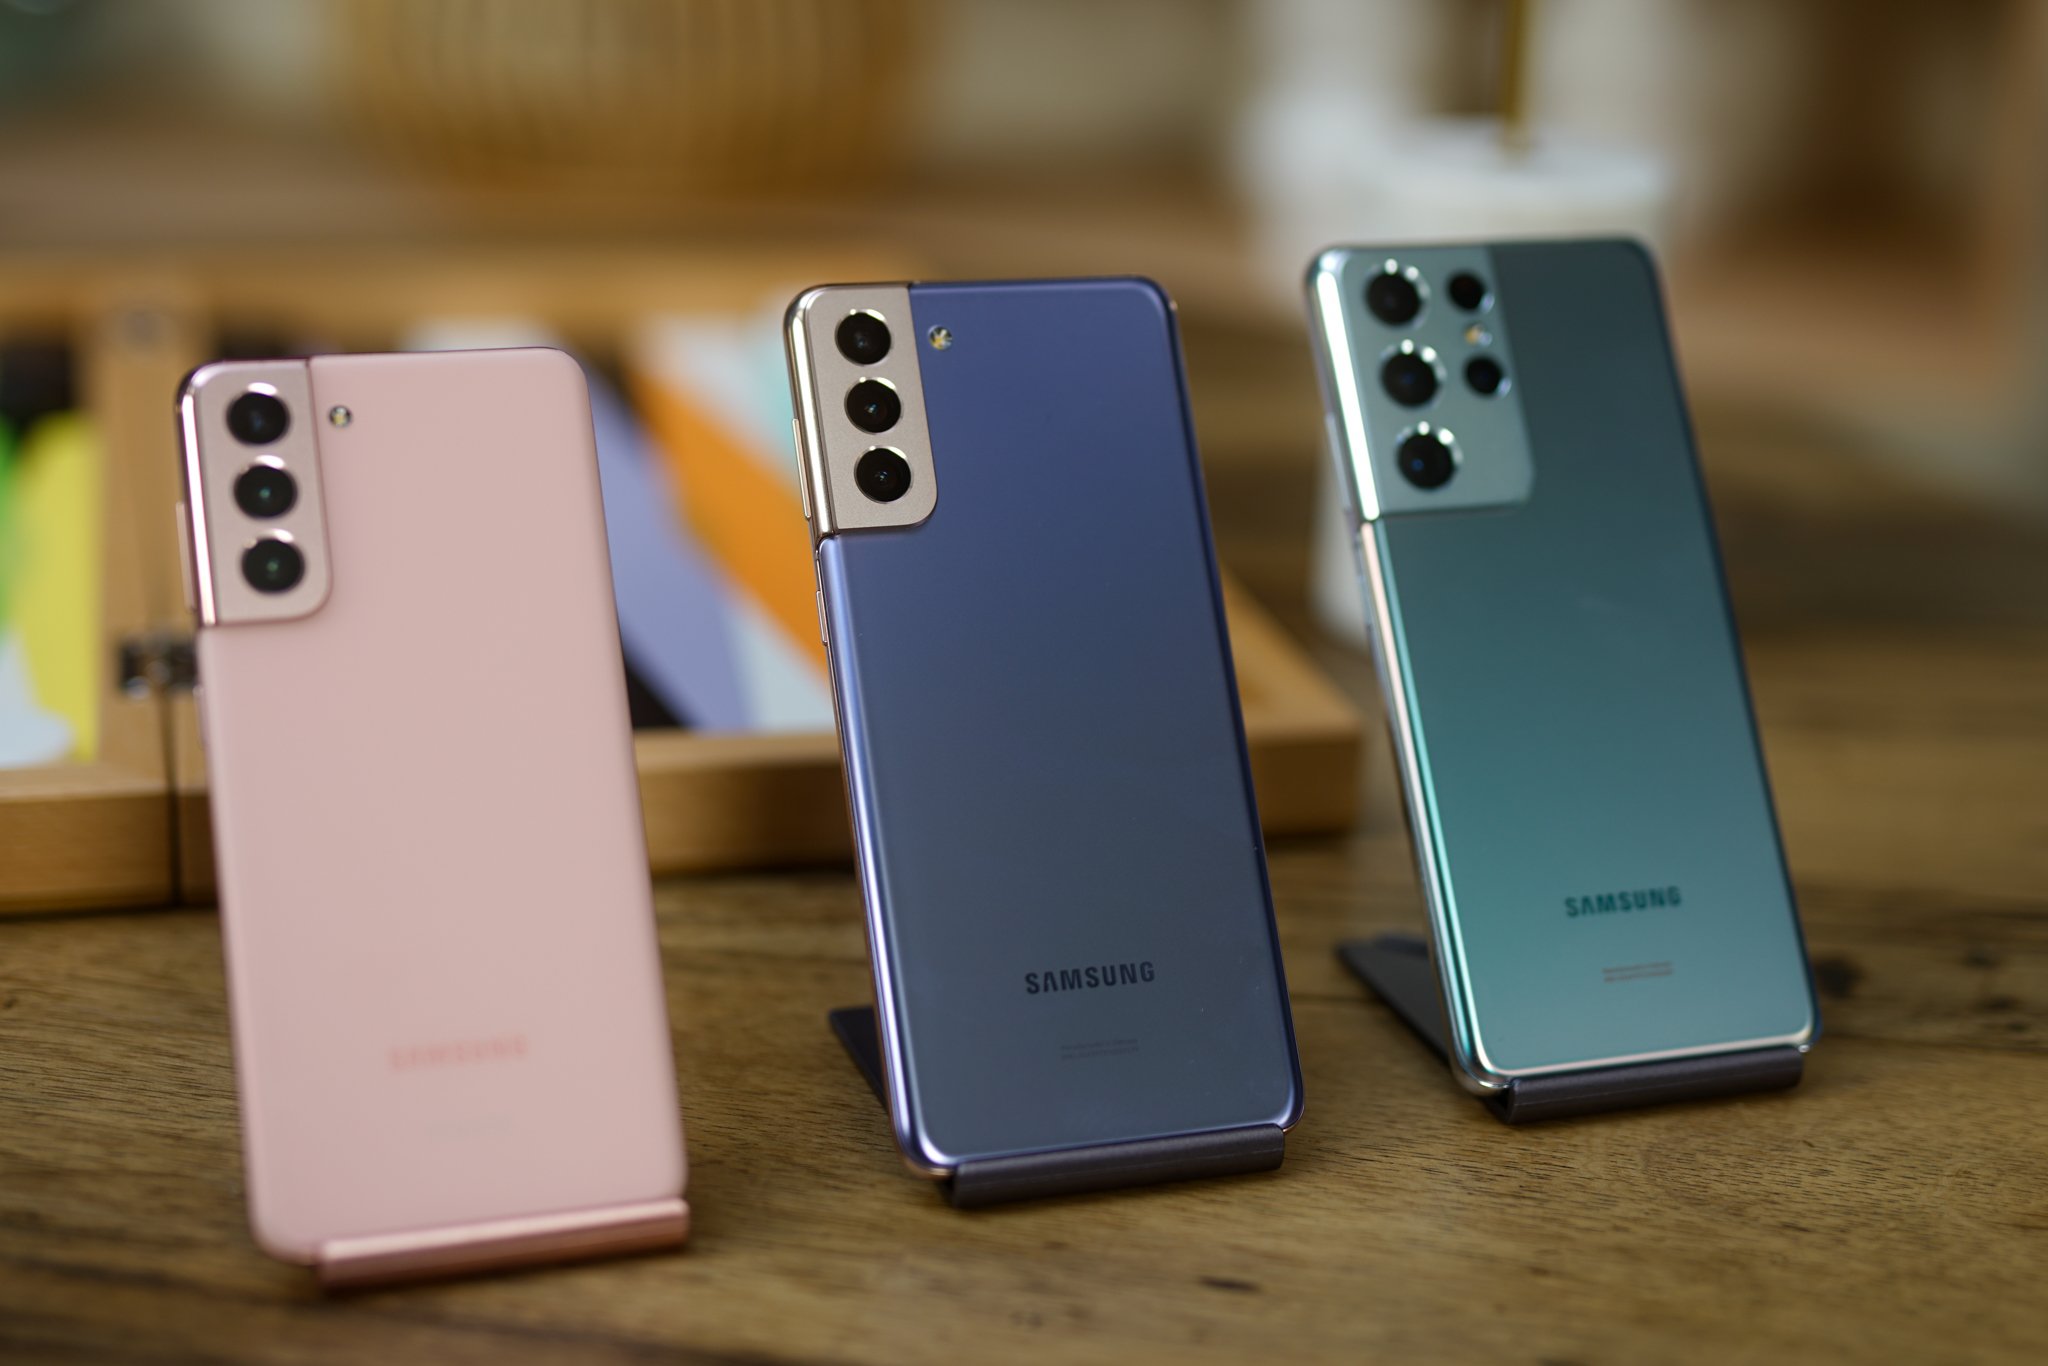 Galaxy S21, S21+ e S21 Ultra: tudo sobre os novos smartphones top de linha  da Samsung – Hands-On 